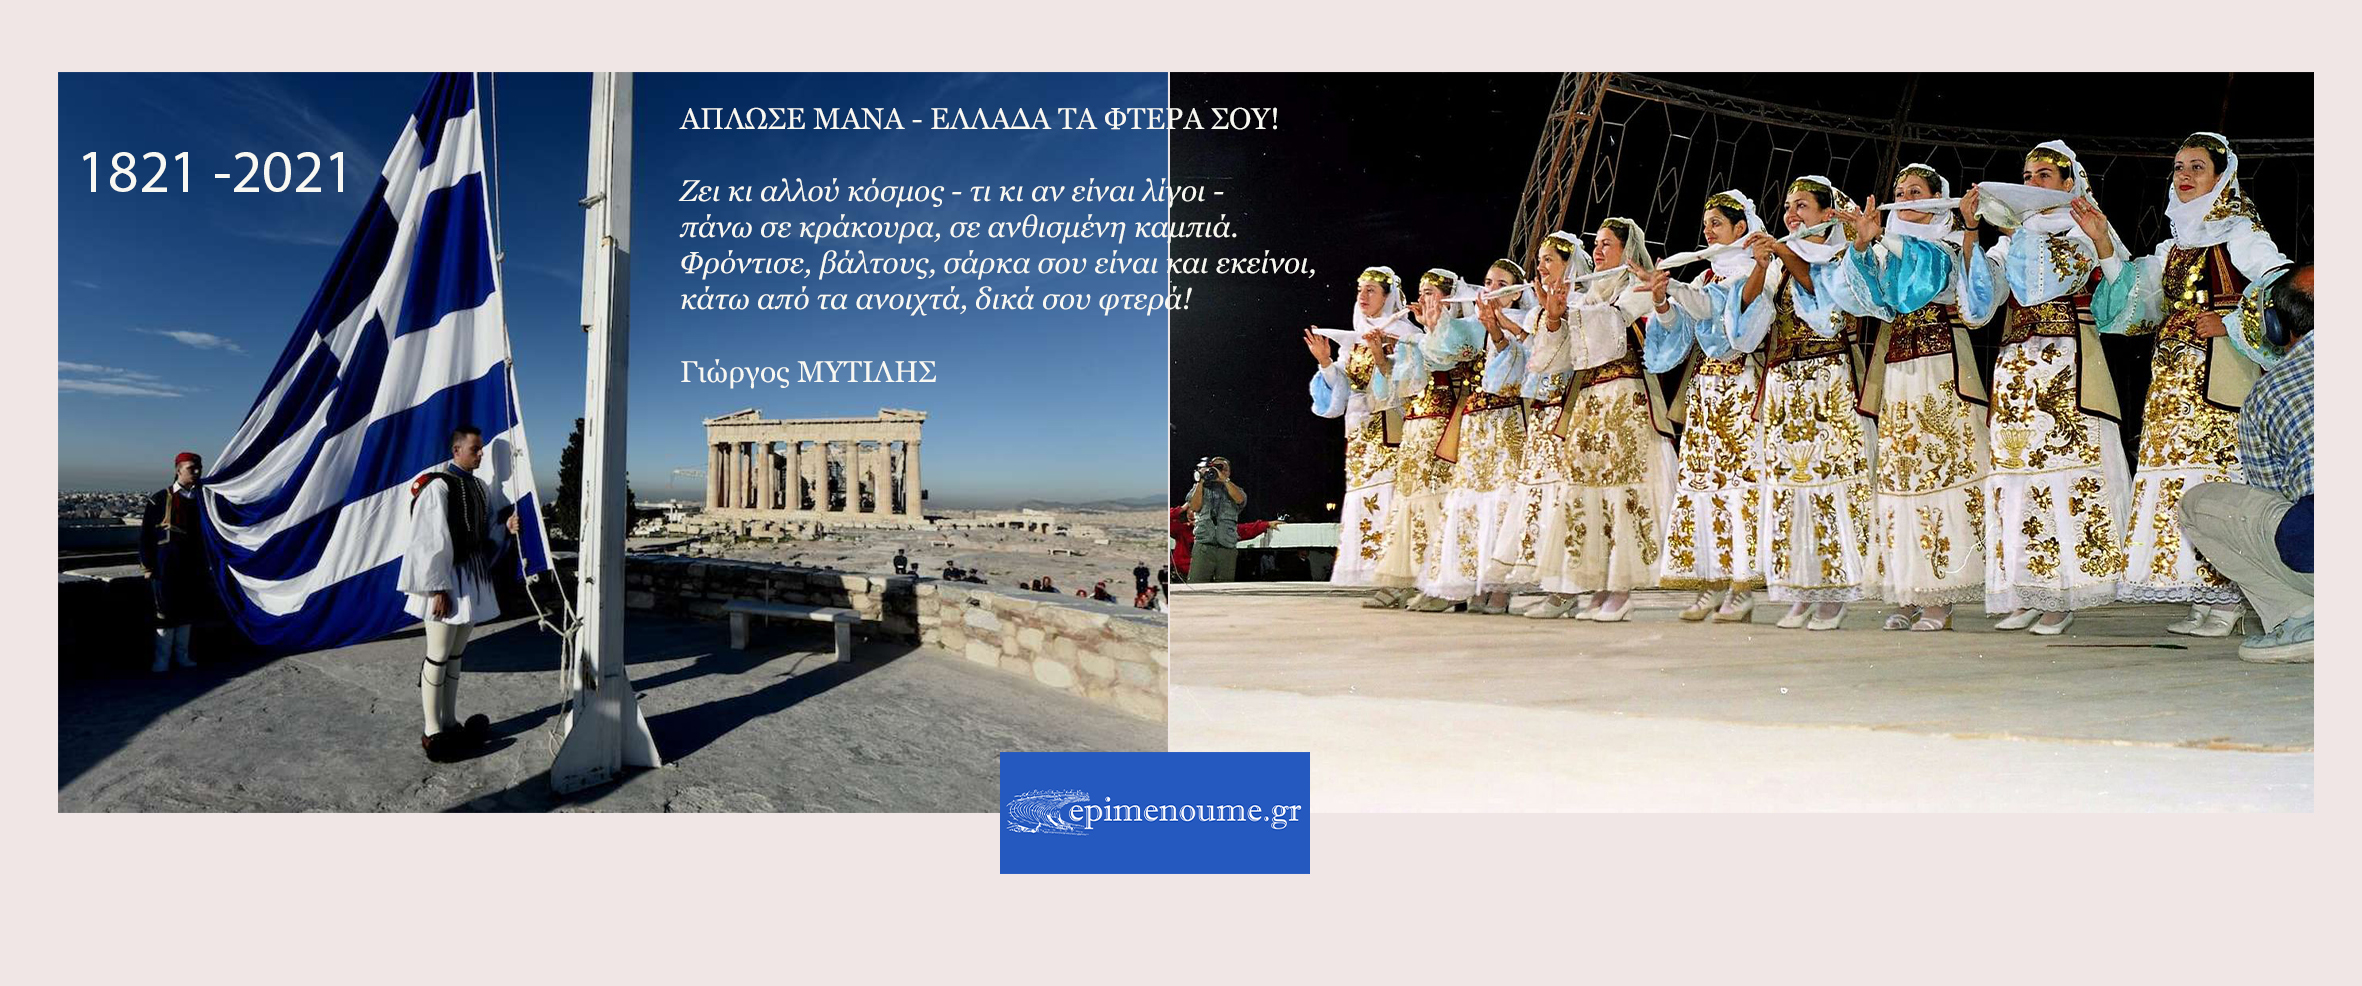 Χρόνια πολλά Πατρίδα! Χρόνια λαμπρά Ελλάδα στην 3η χιλιετία! Χρόνια πολλά στους Έλληνες όπου γης!